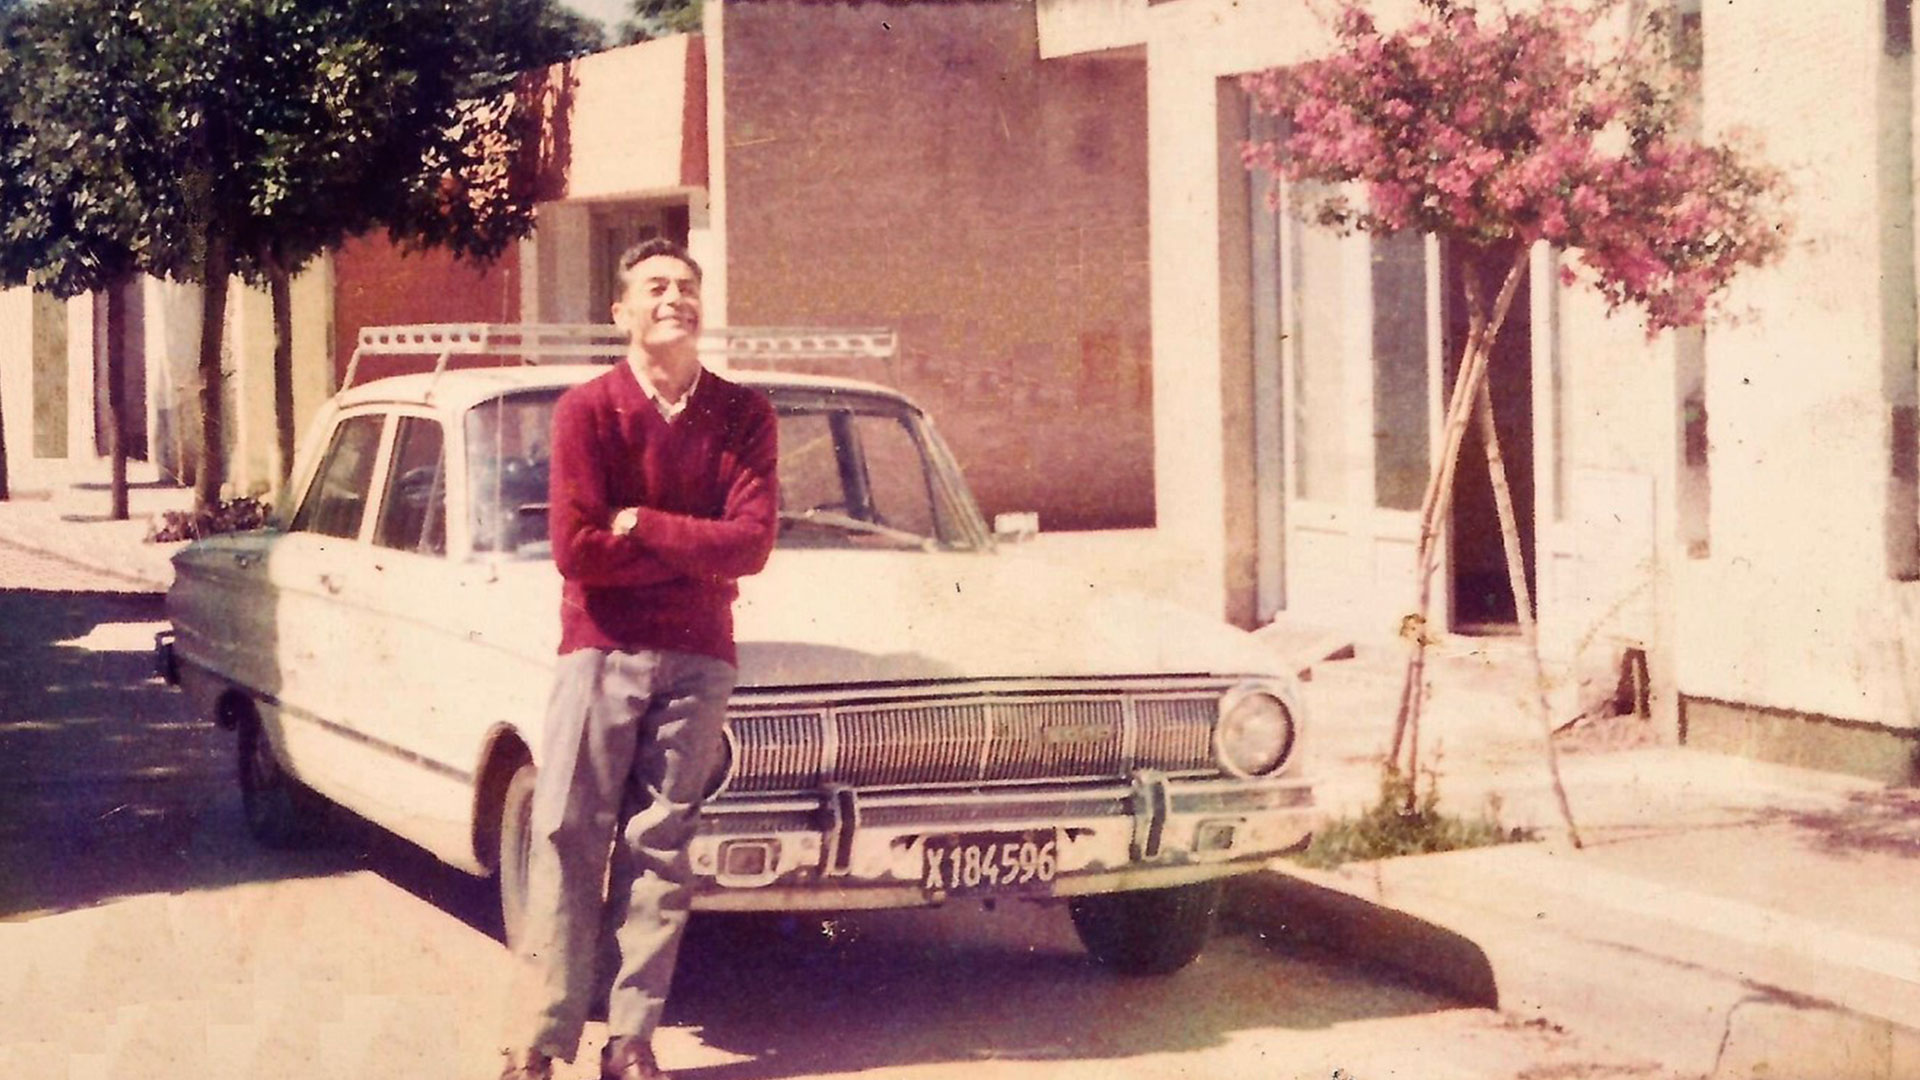 Ricardo posa feliz con su auto en el frente de su casa de Oncativo, en 1985 (IG: @elfalcondemiviejo)